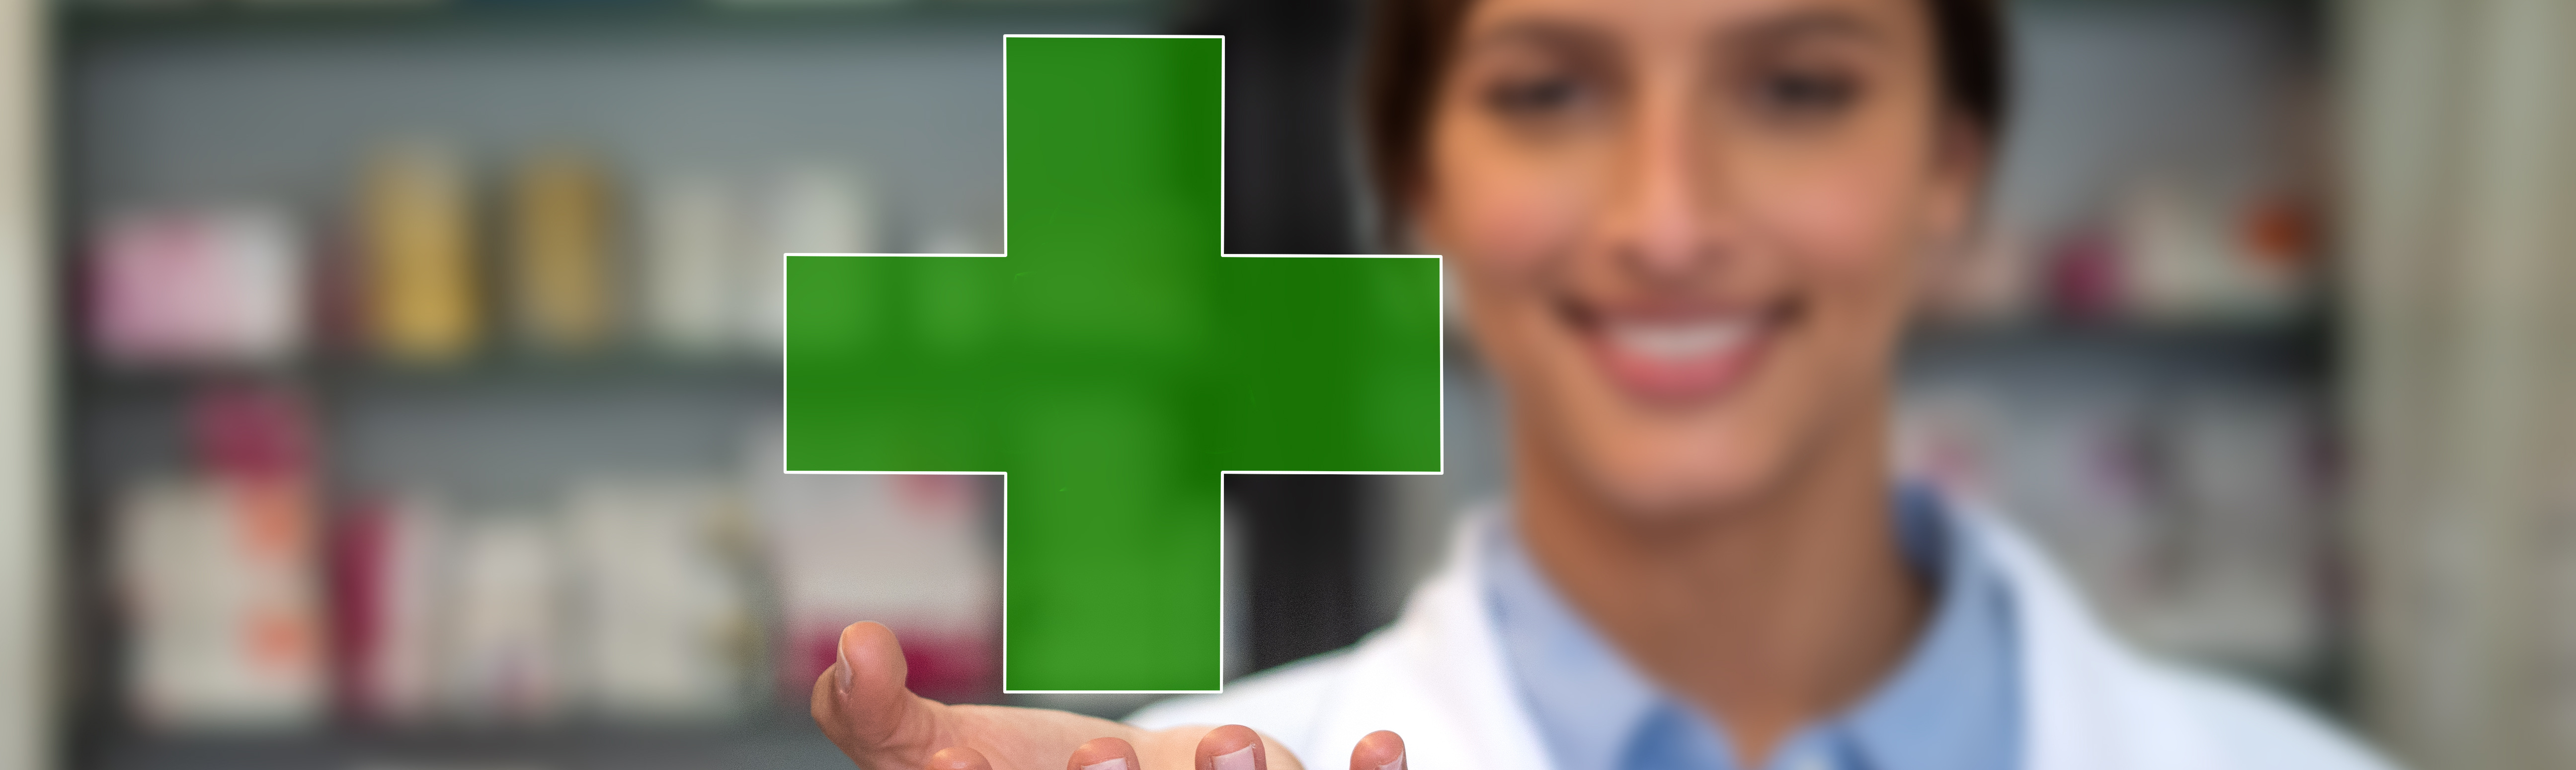 Farmacéutica sonriendo en el interior de una farmacia y mostrando una cruz verde en sus manos